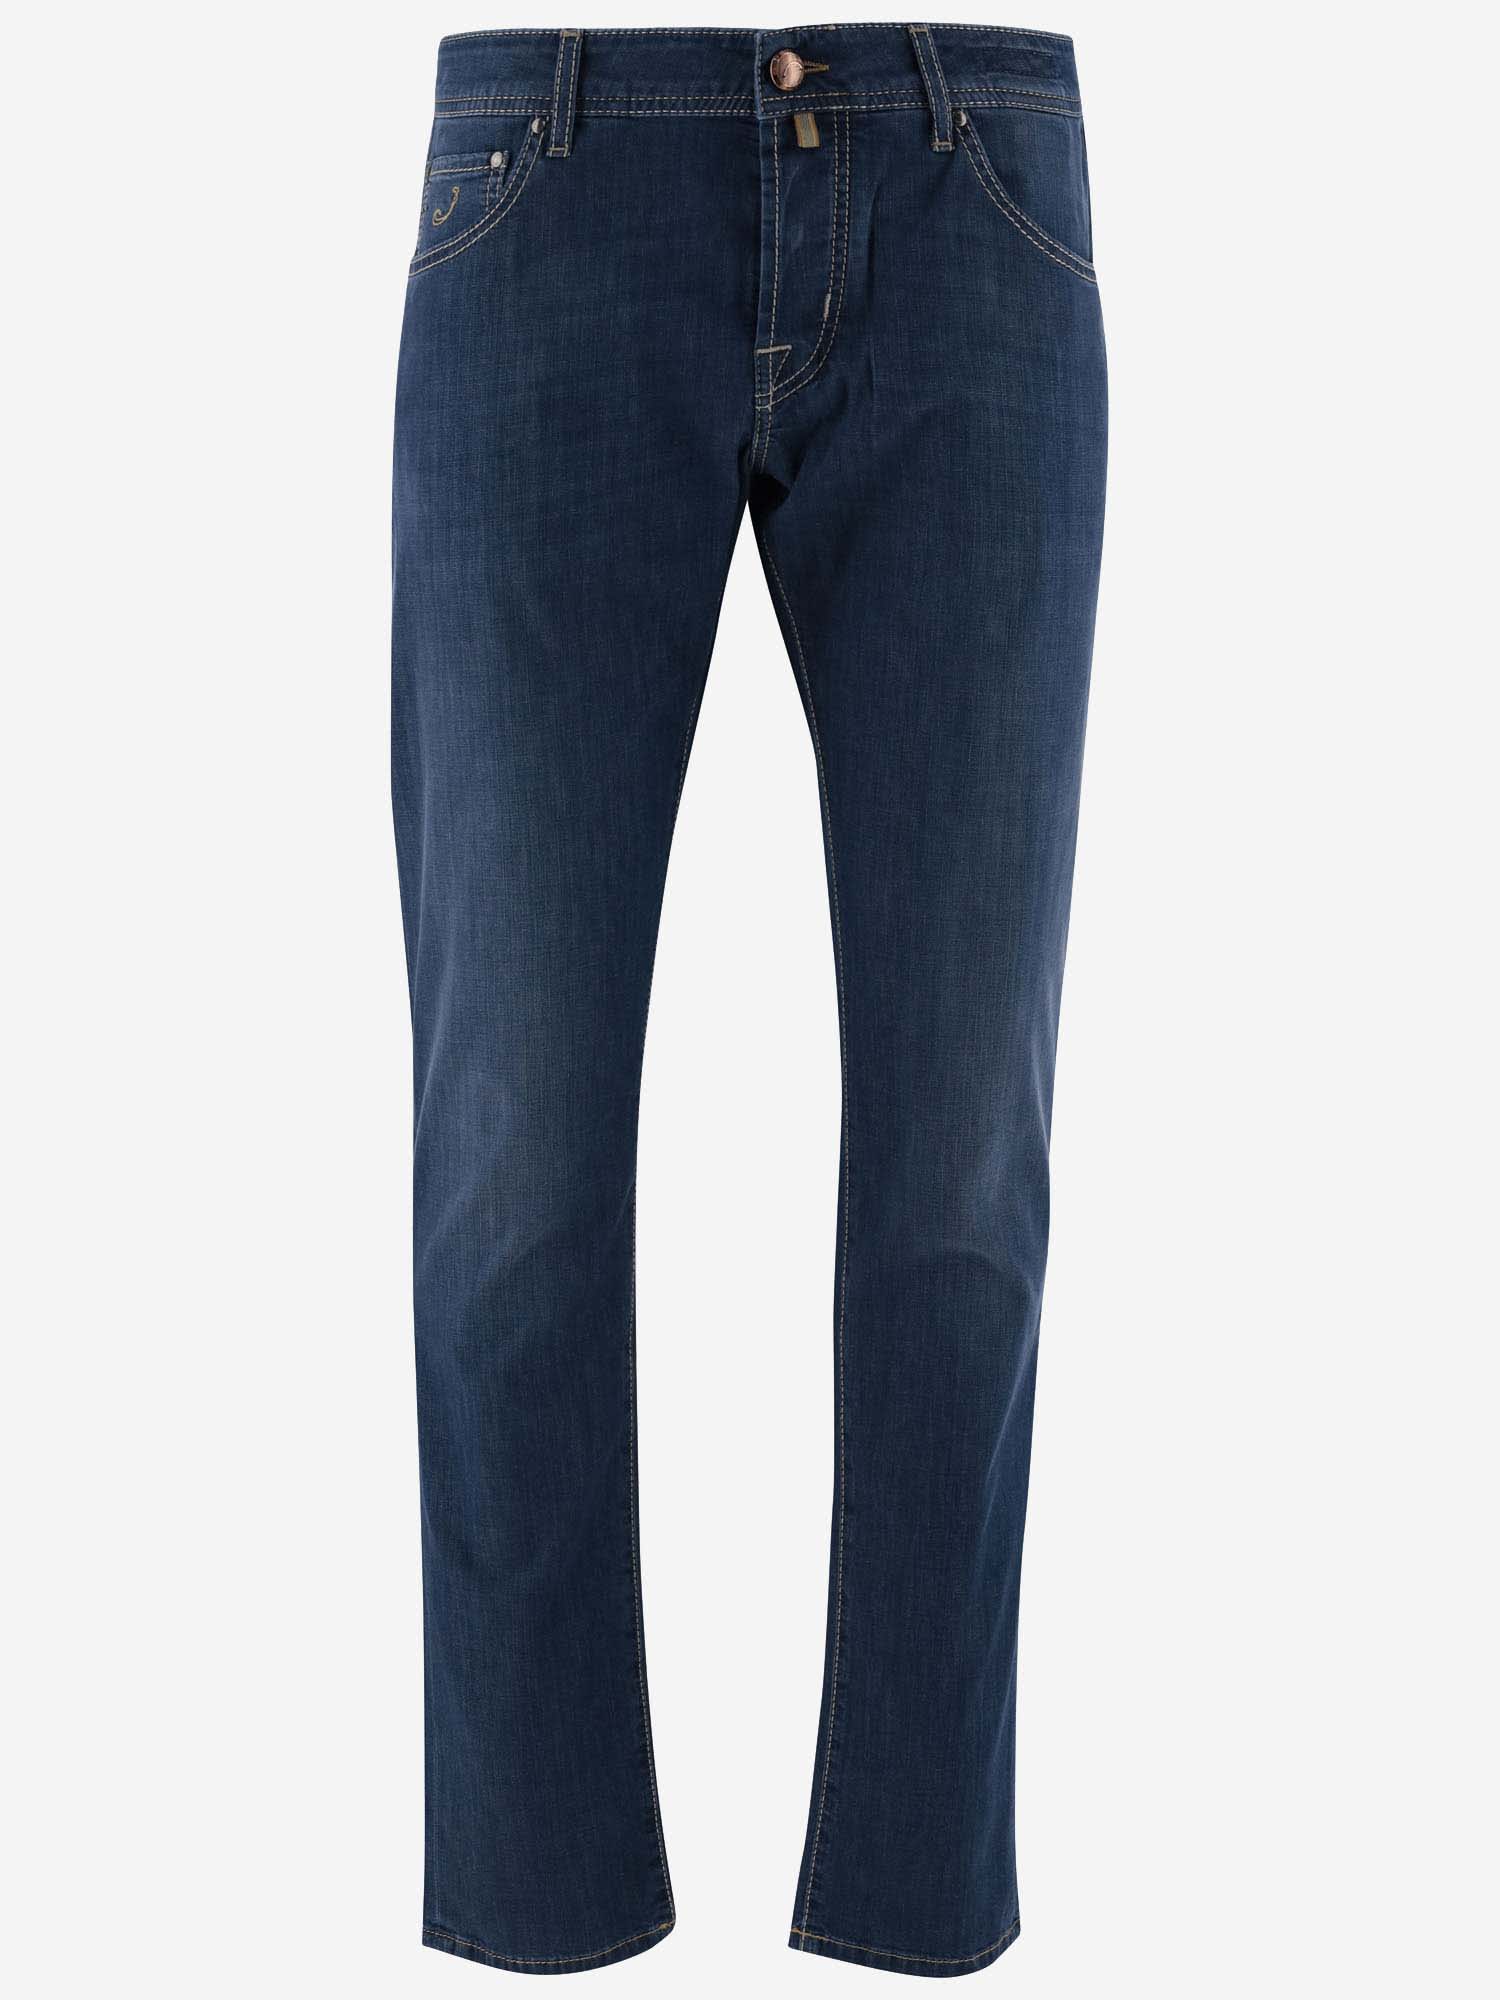 Shop Jacob Cohen Cotton Blend Denim Jeans